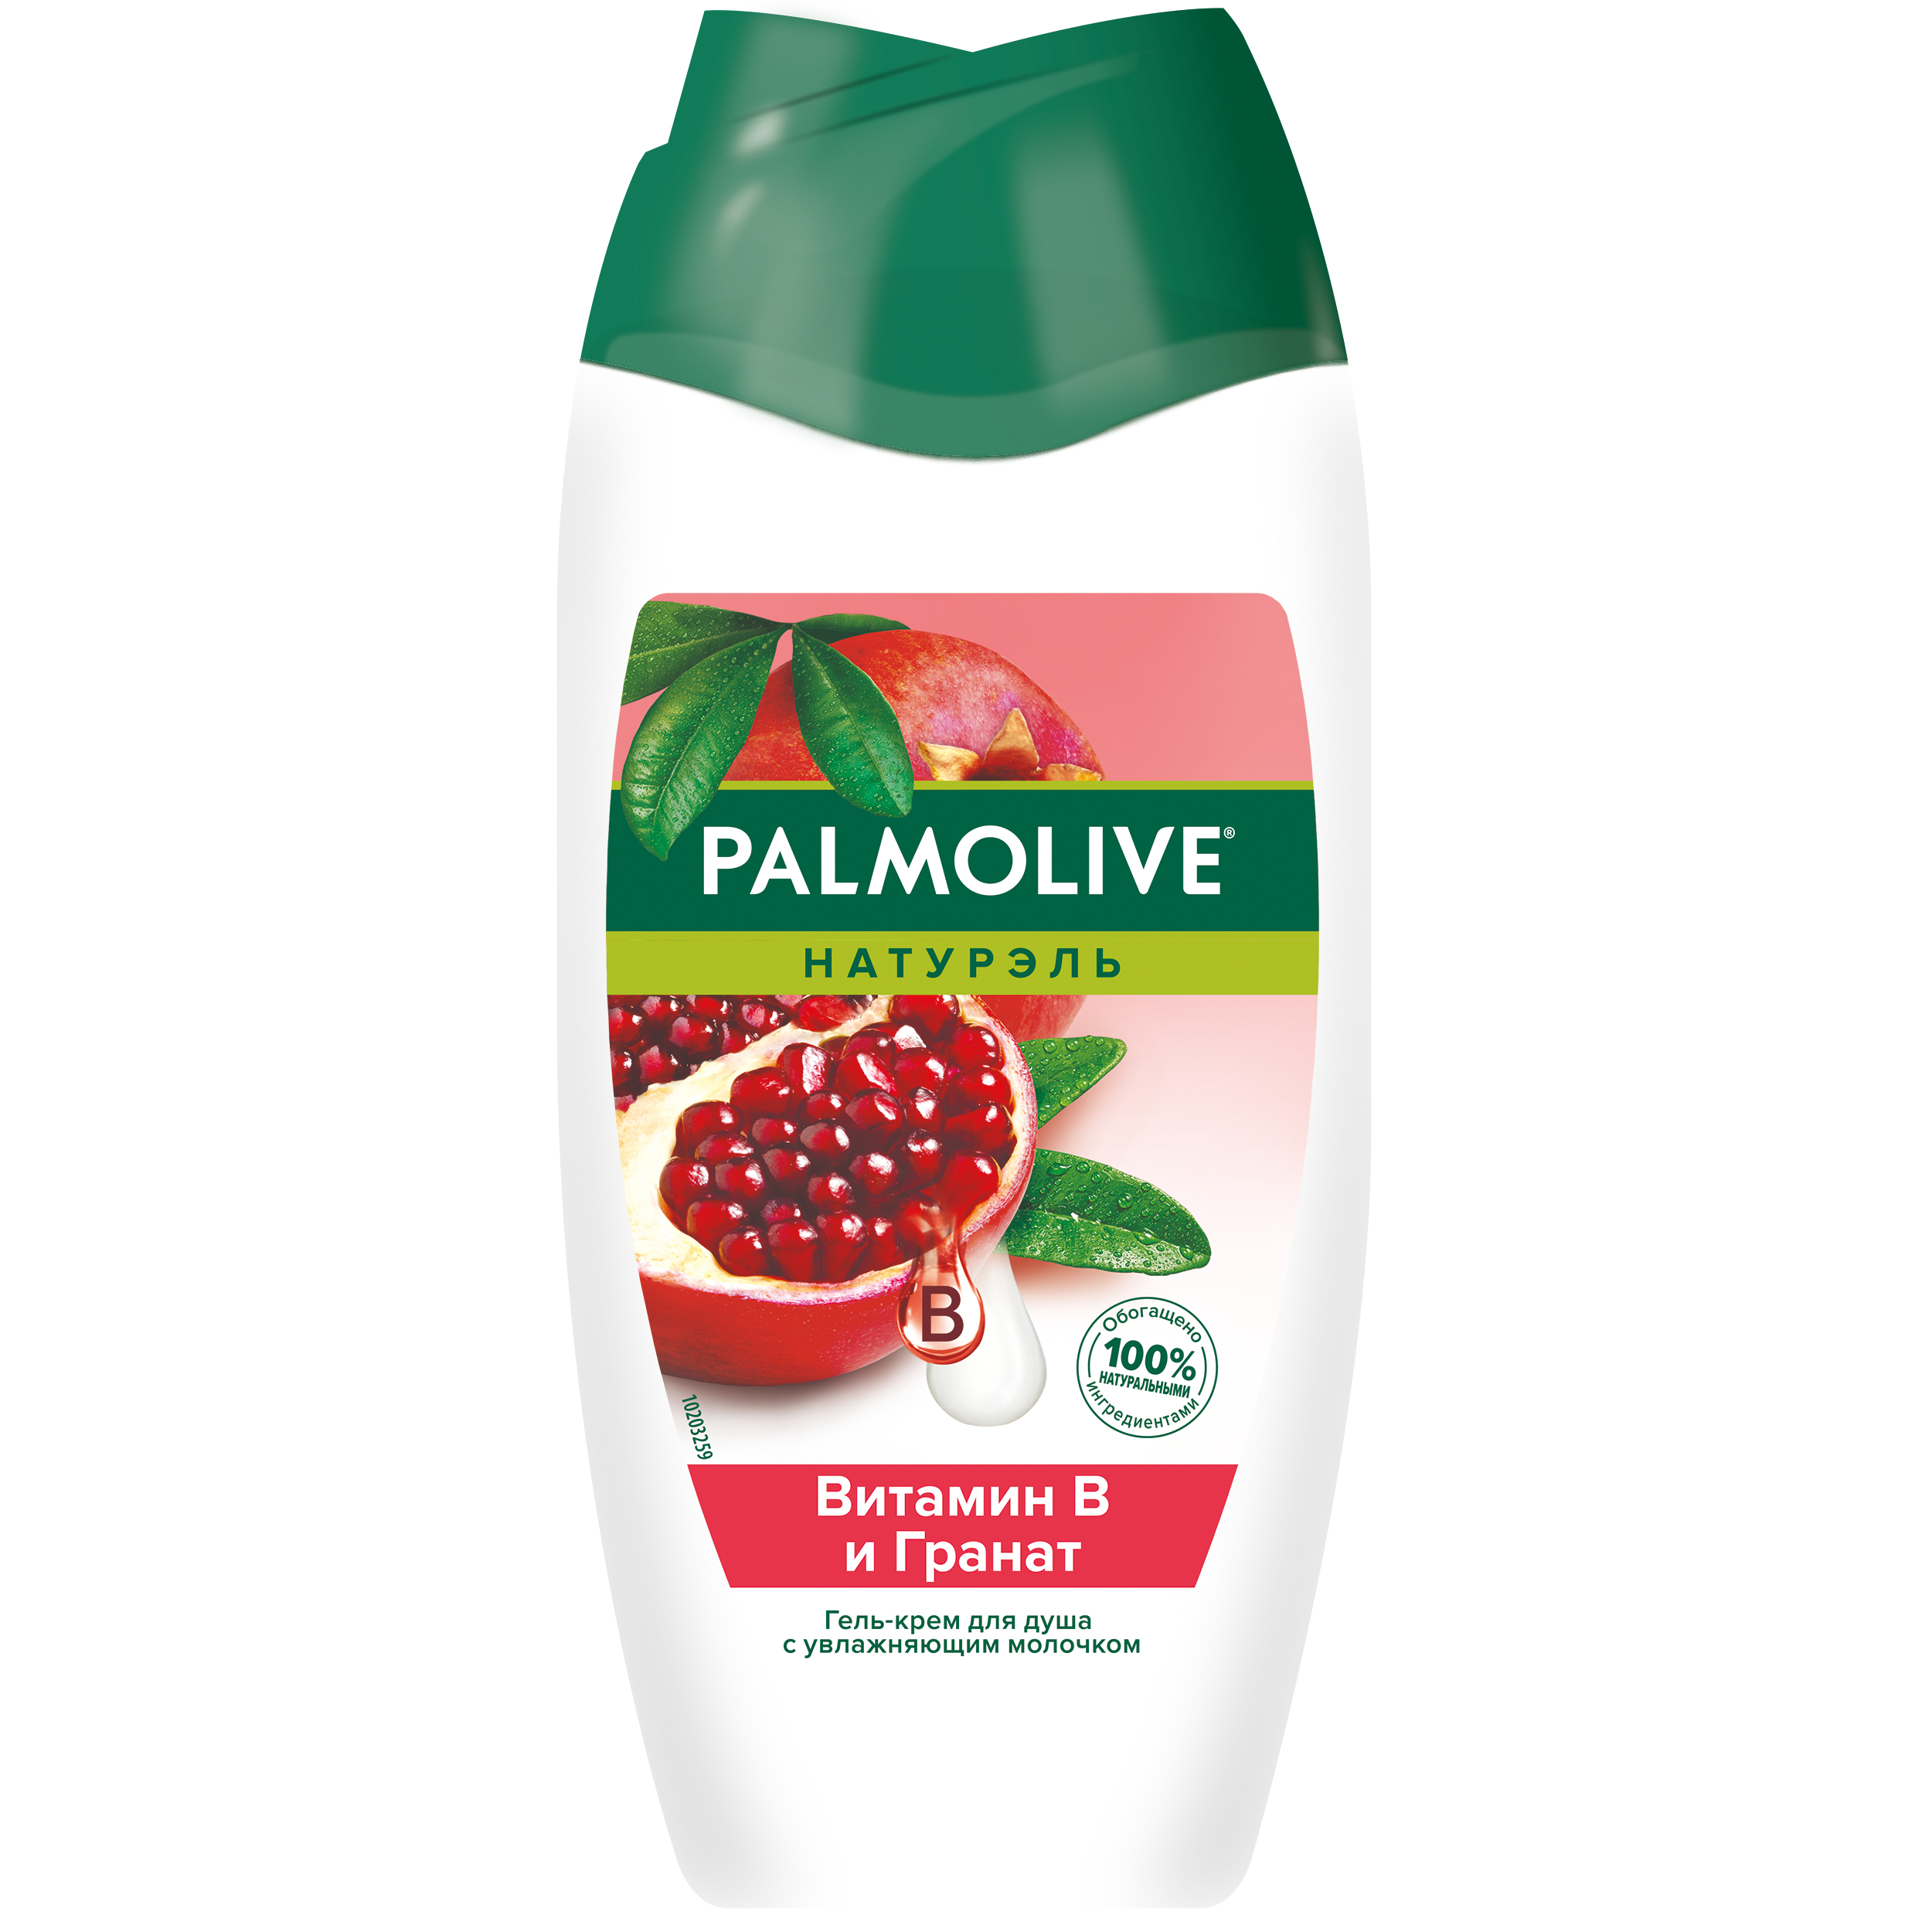 Гель-крем для душа Palmolive Натурэль витамин B и гранат, с увлажняющим молочком 250 мл palmolive гель для душа с оливковым молочком naturals 250